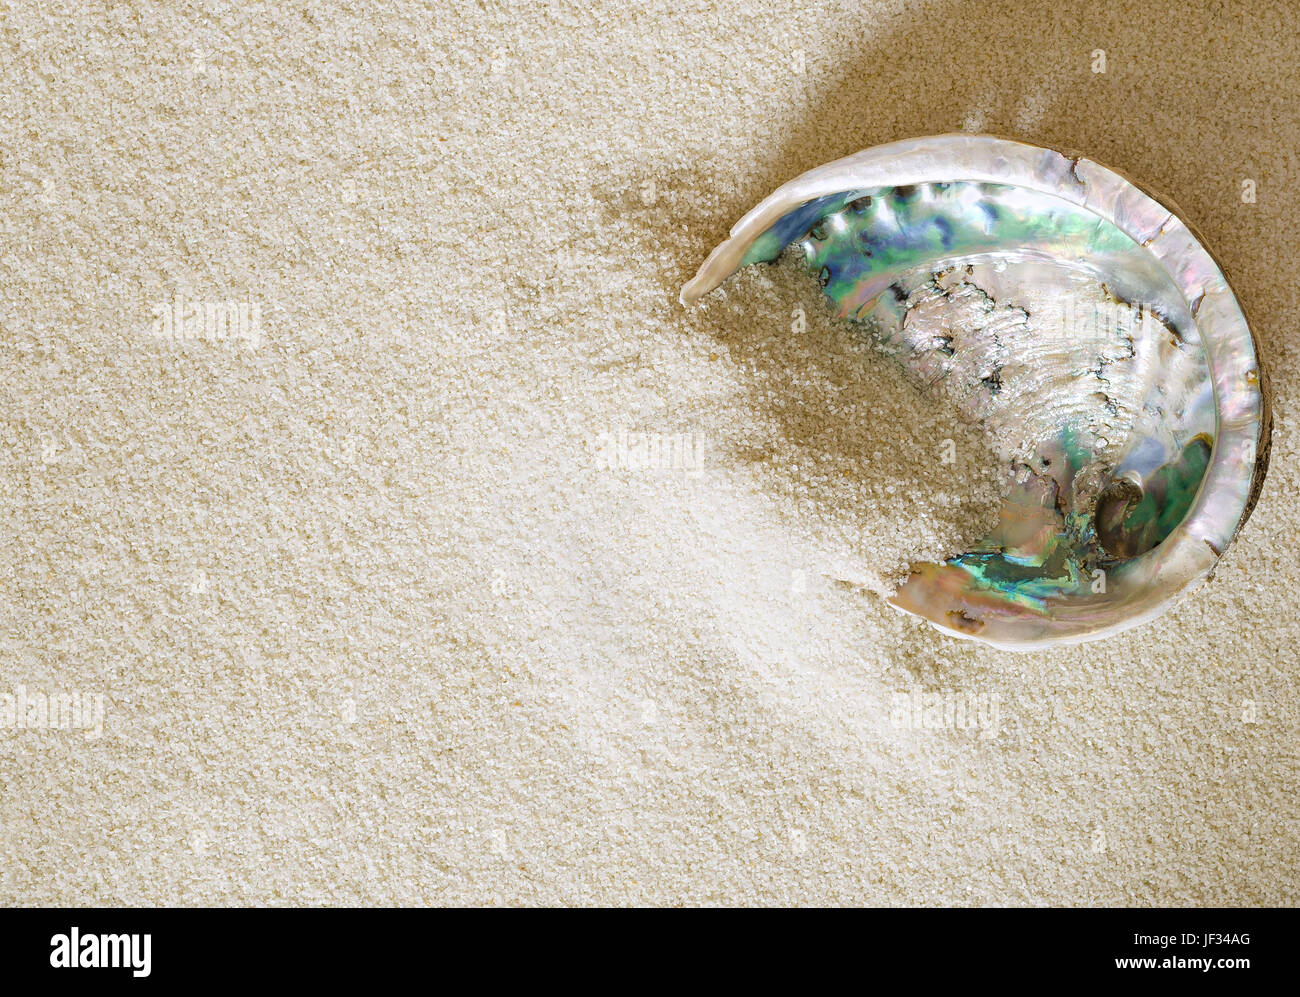 Big abalone shell sulla sabbia bianca. Anche ormer, orecchie di mare, muttonfish muttonshell o. Haliotis, lumaca di mare aperto con struttura a spirale. Foto Stock